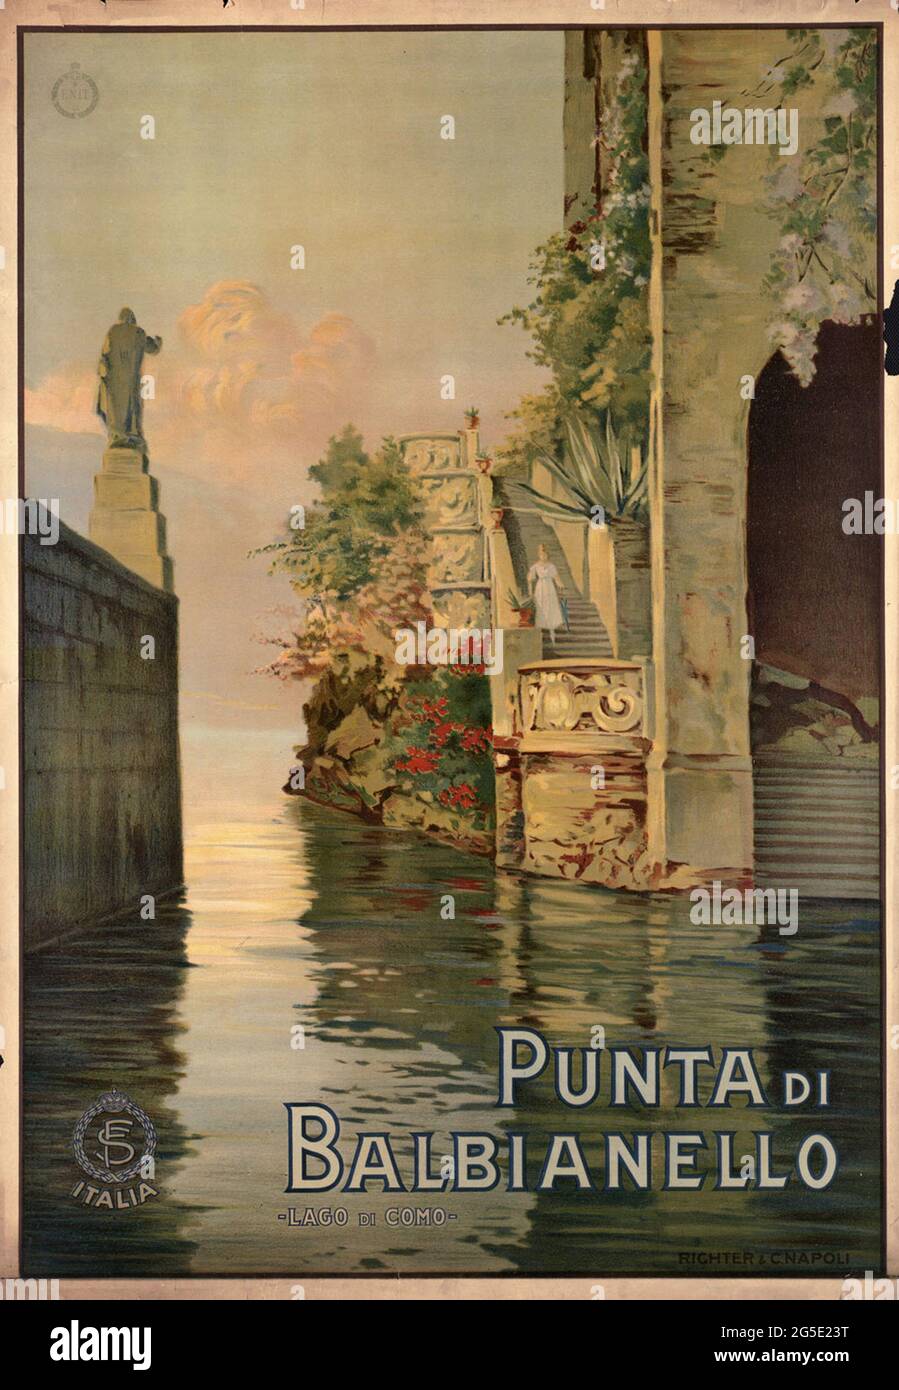 Une affiche de voyage vintage pour Punta Balbianello, Lac de Côme, Italie Banque D'Images